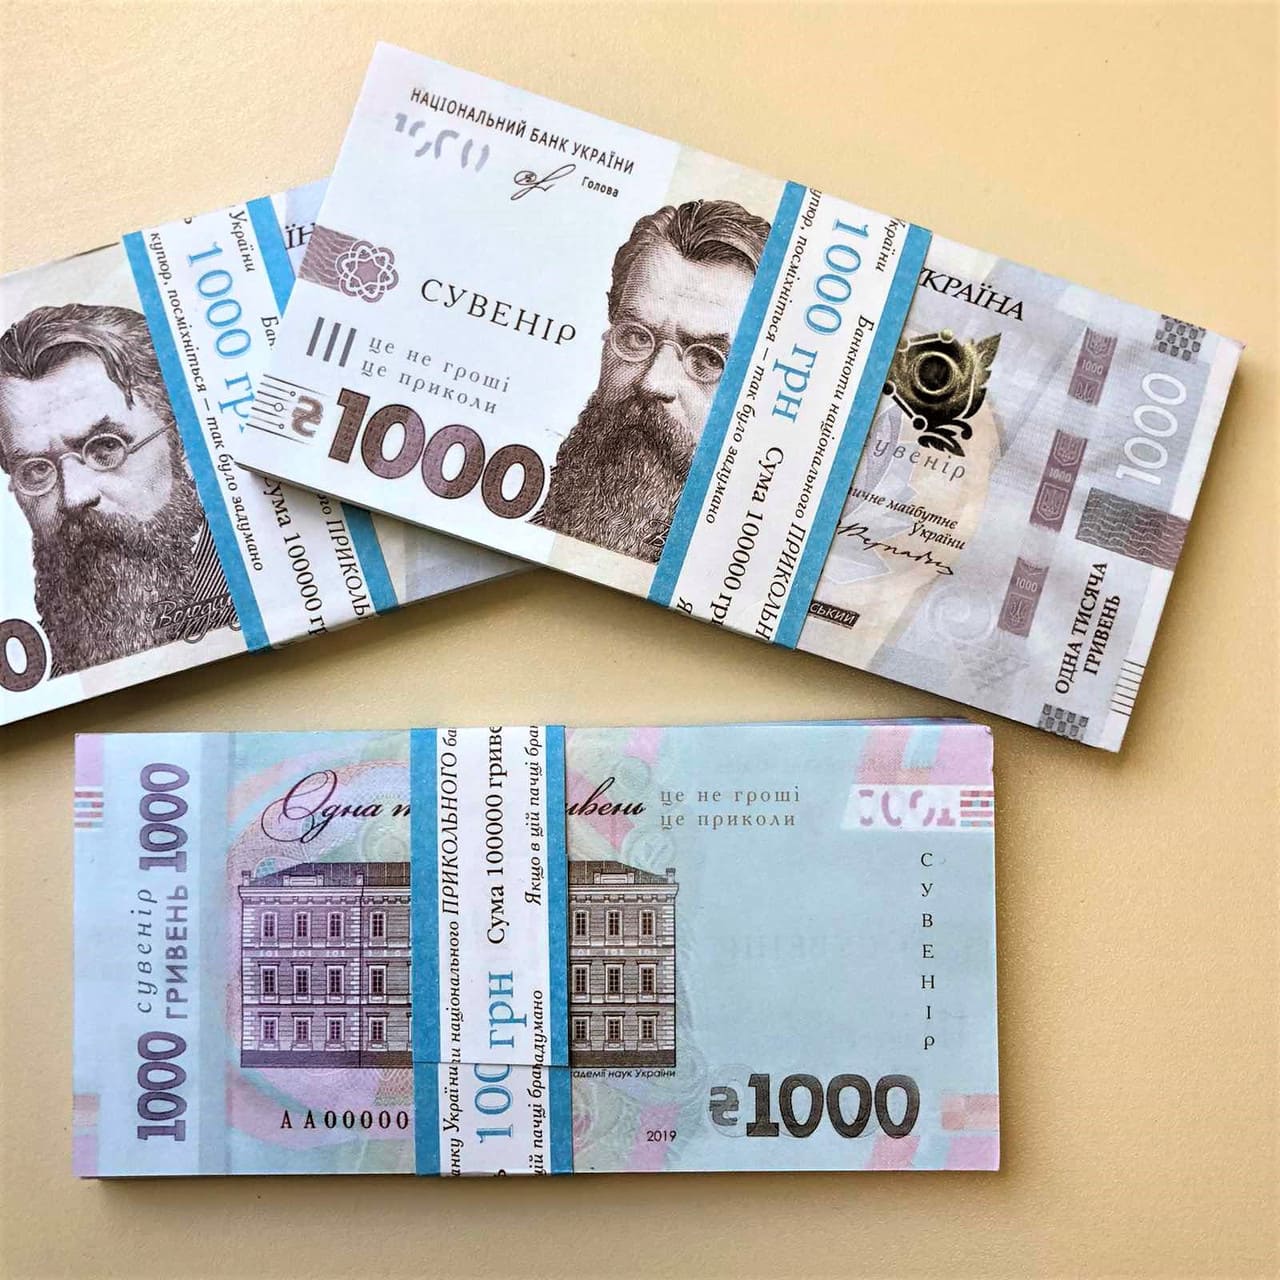 Детям и подросткам в Украине выдадут по 1000 гривен, но не всем: кто получит деньги